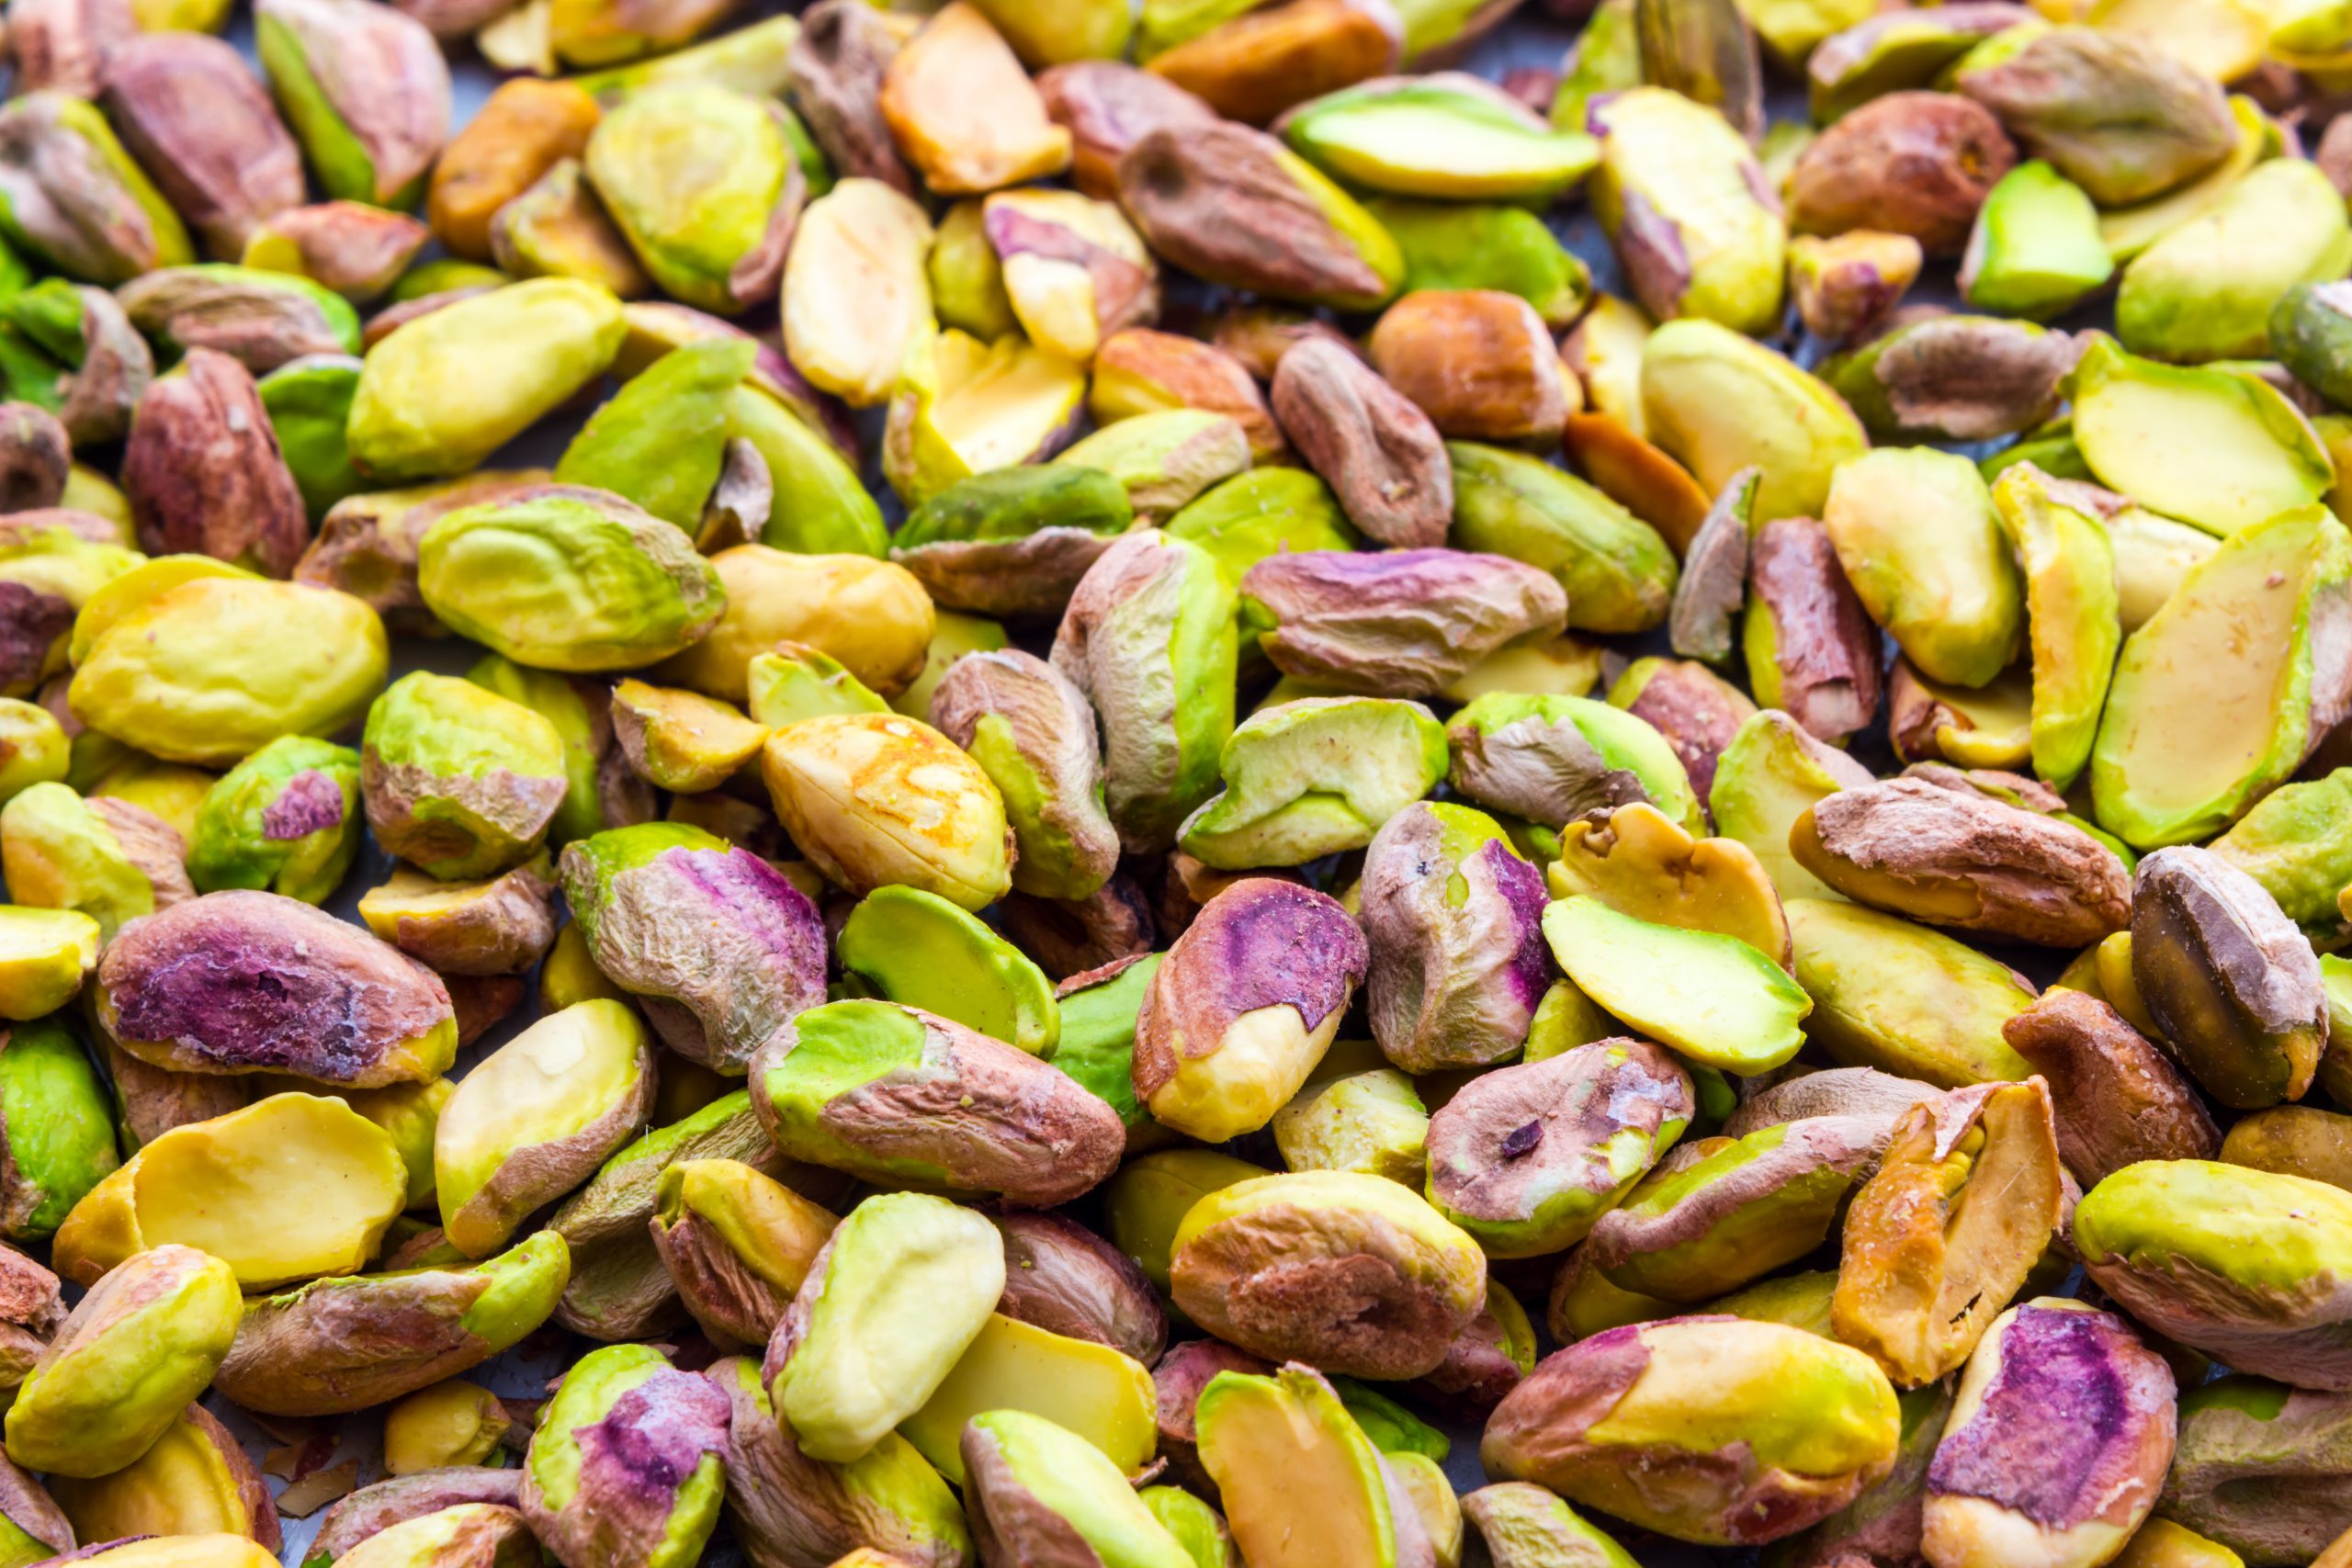 Export of high quality vacuum pistachio kernels to Australia